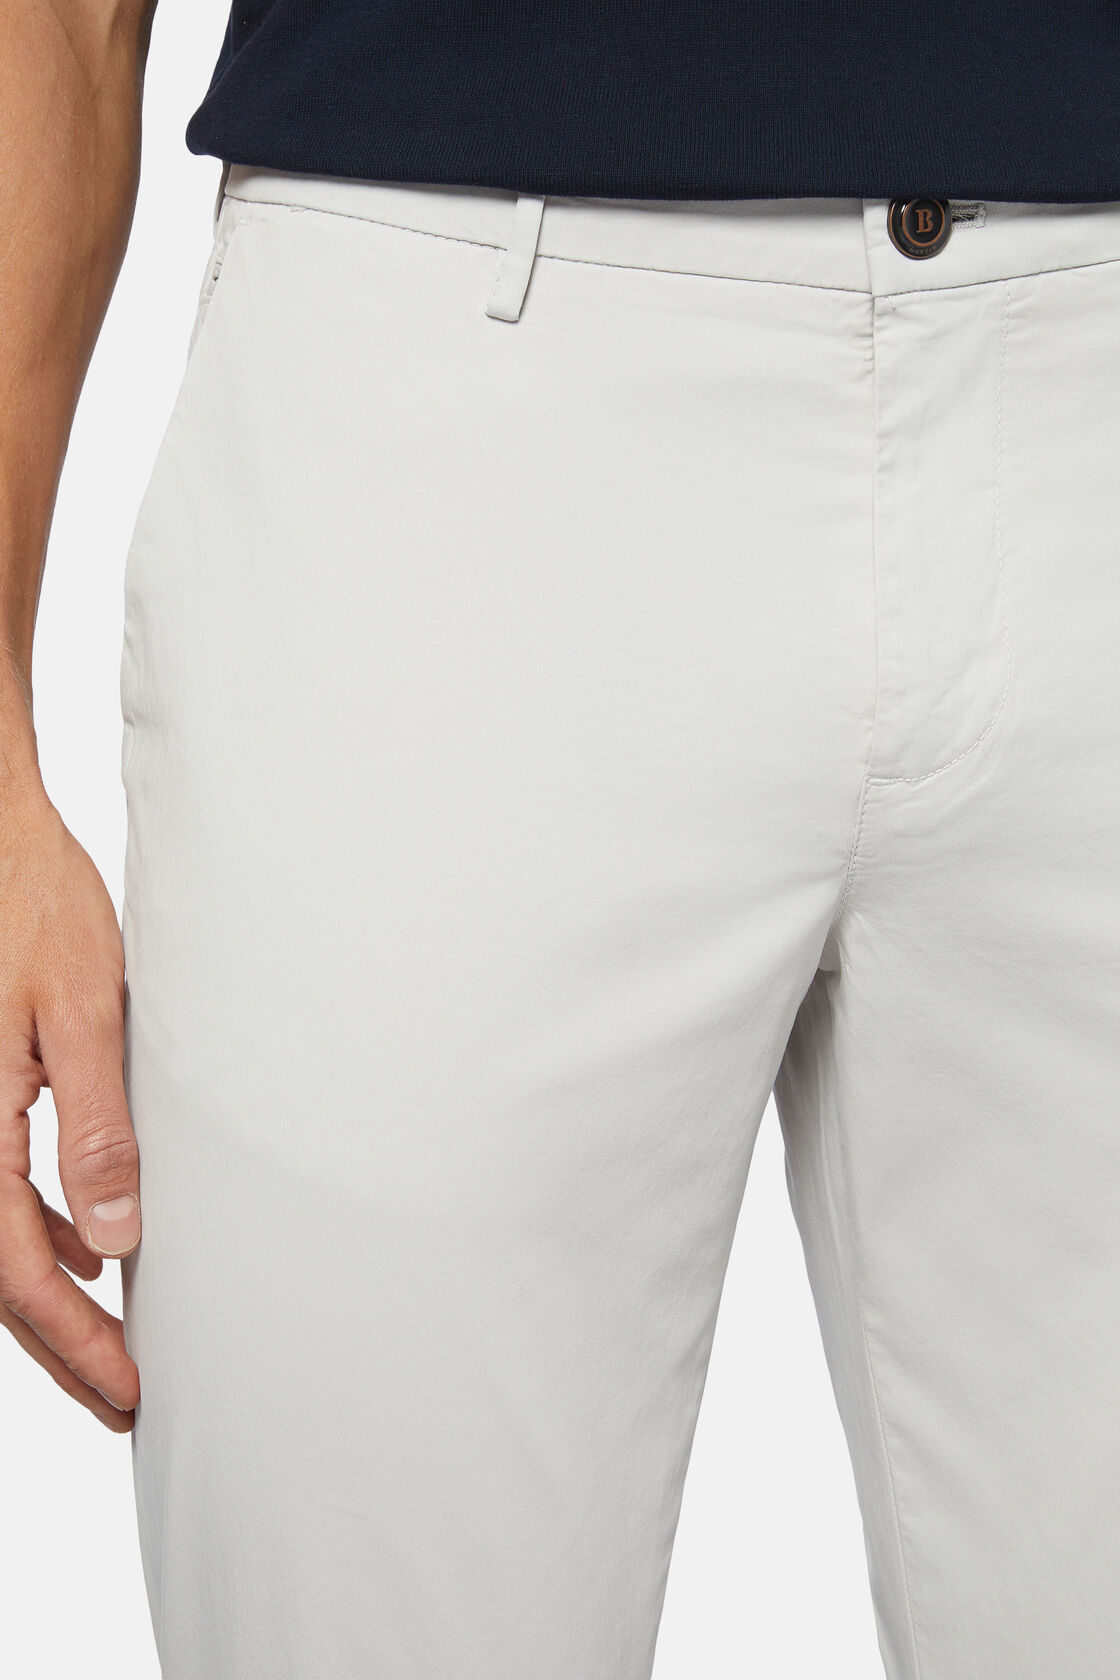 Pantalon En Coton Extensible, gris clair, hi-res